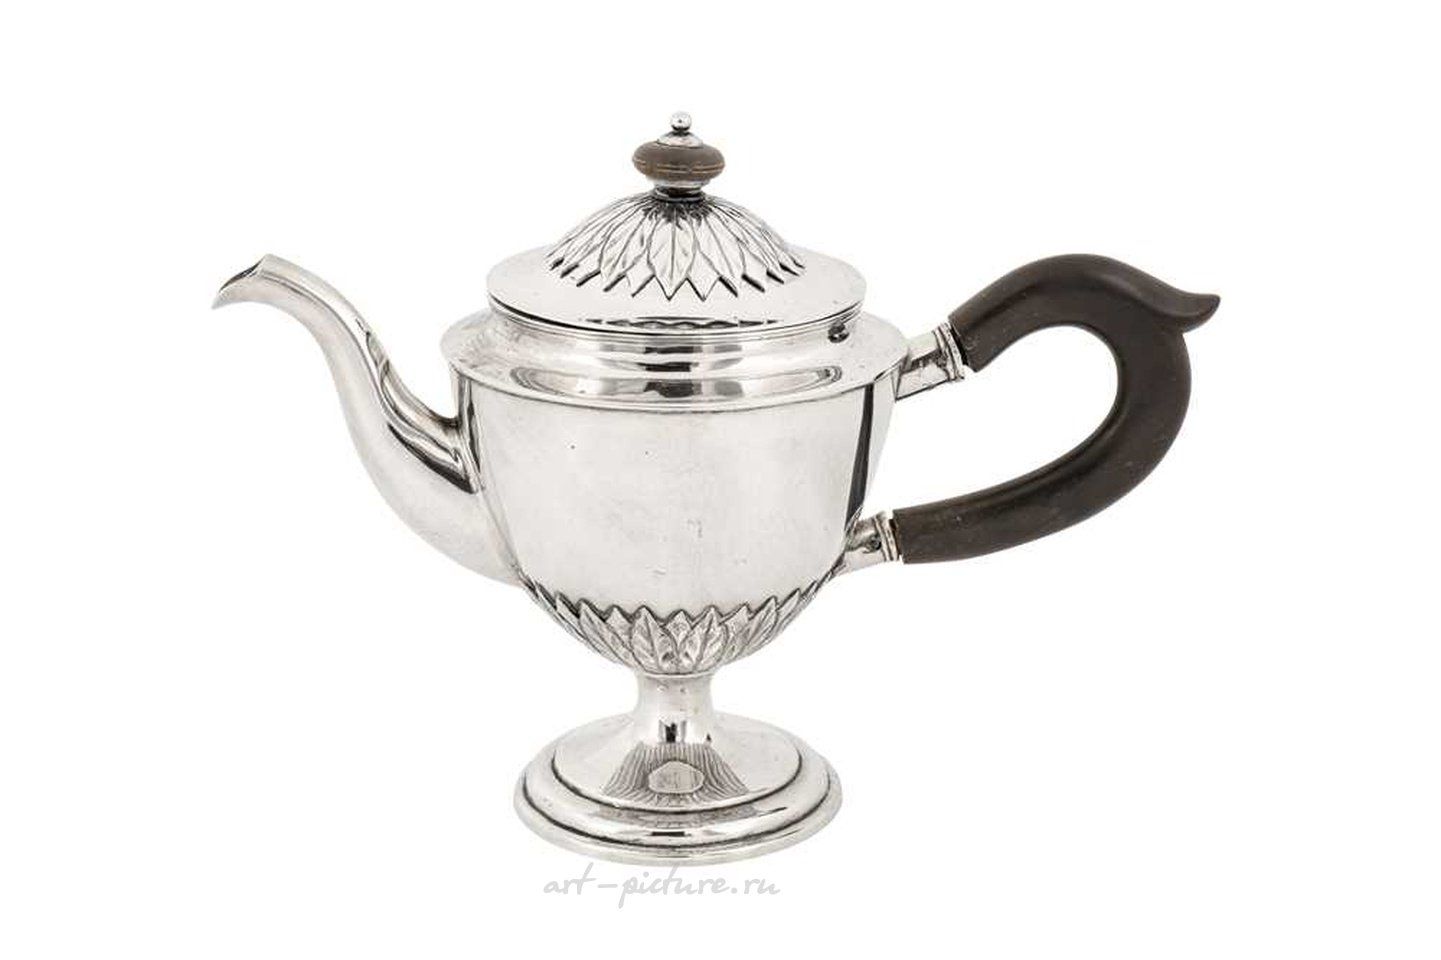 Русское серебро , Маленький чайник русского серебра начала XIX века